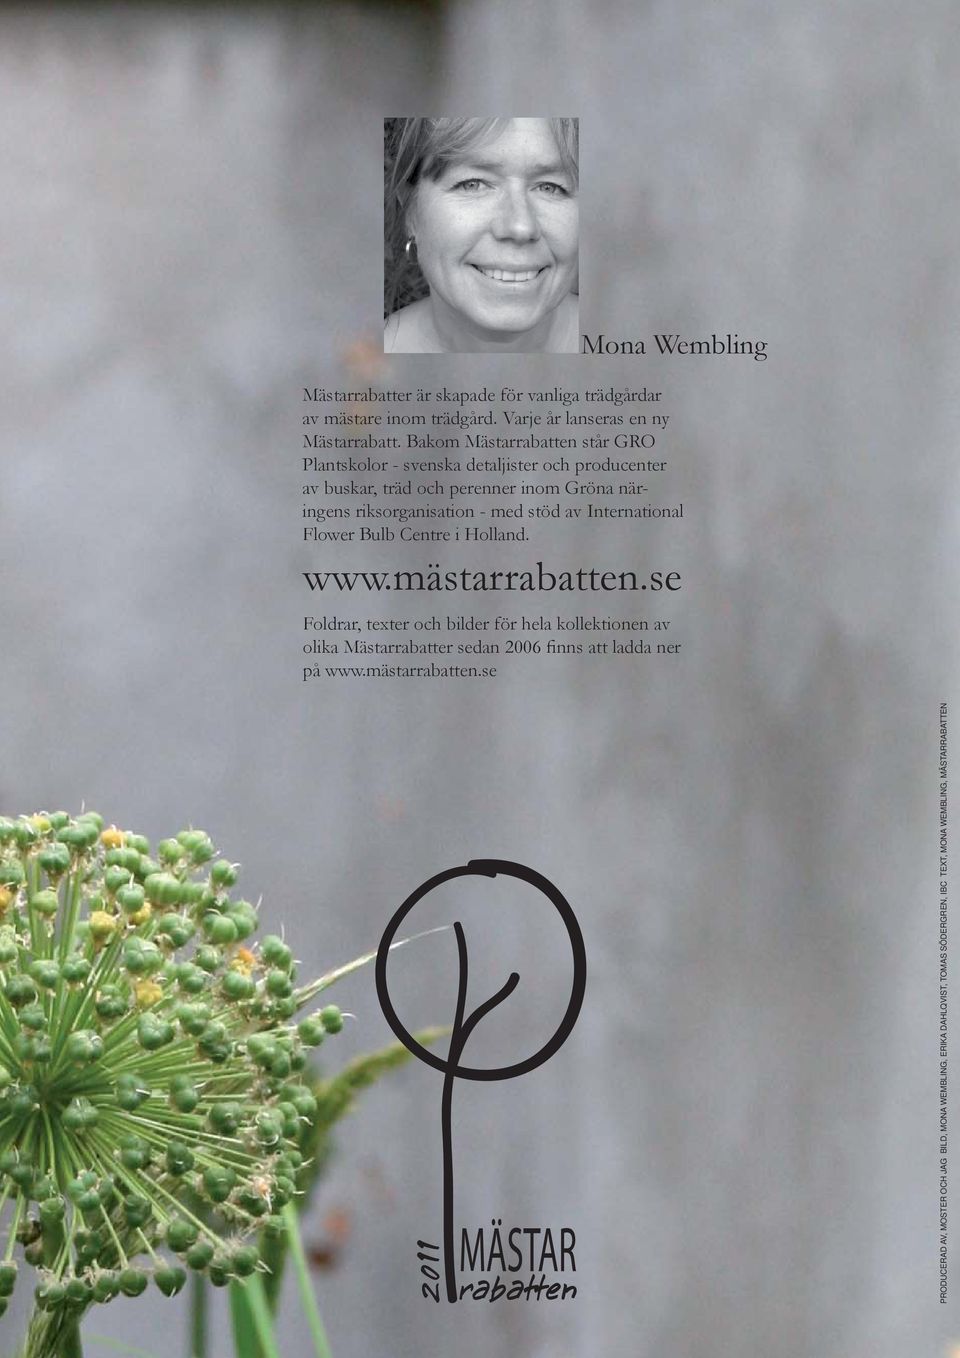 stöd av International Flower Bulb Centre i Holland. www.mästarrabatten.